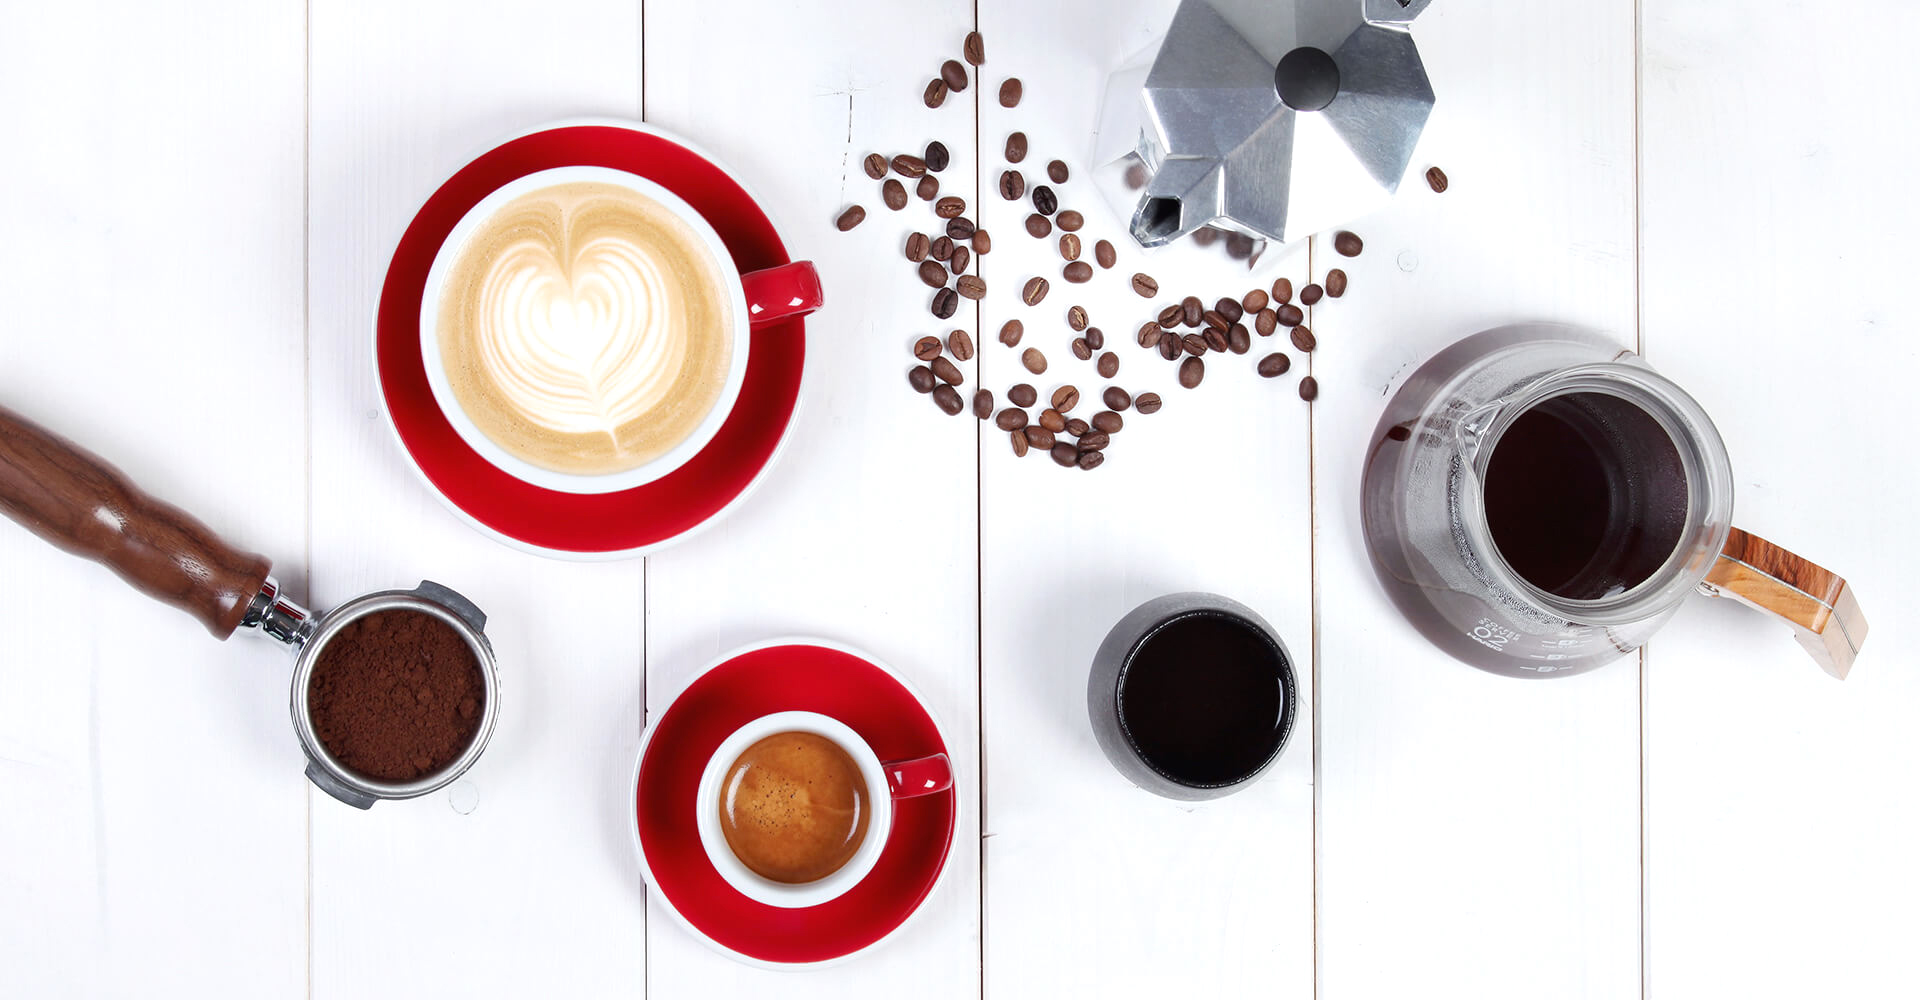 Eine rote Cappuccinotasse mit Latte Art neben einer roten Espressotasse, dazu ein gefüllter Siebträger, eine Bialetti und ein fertiger Filterkaffee